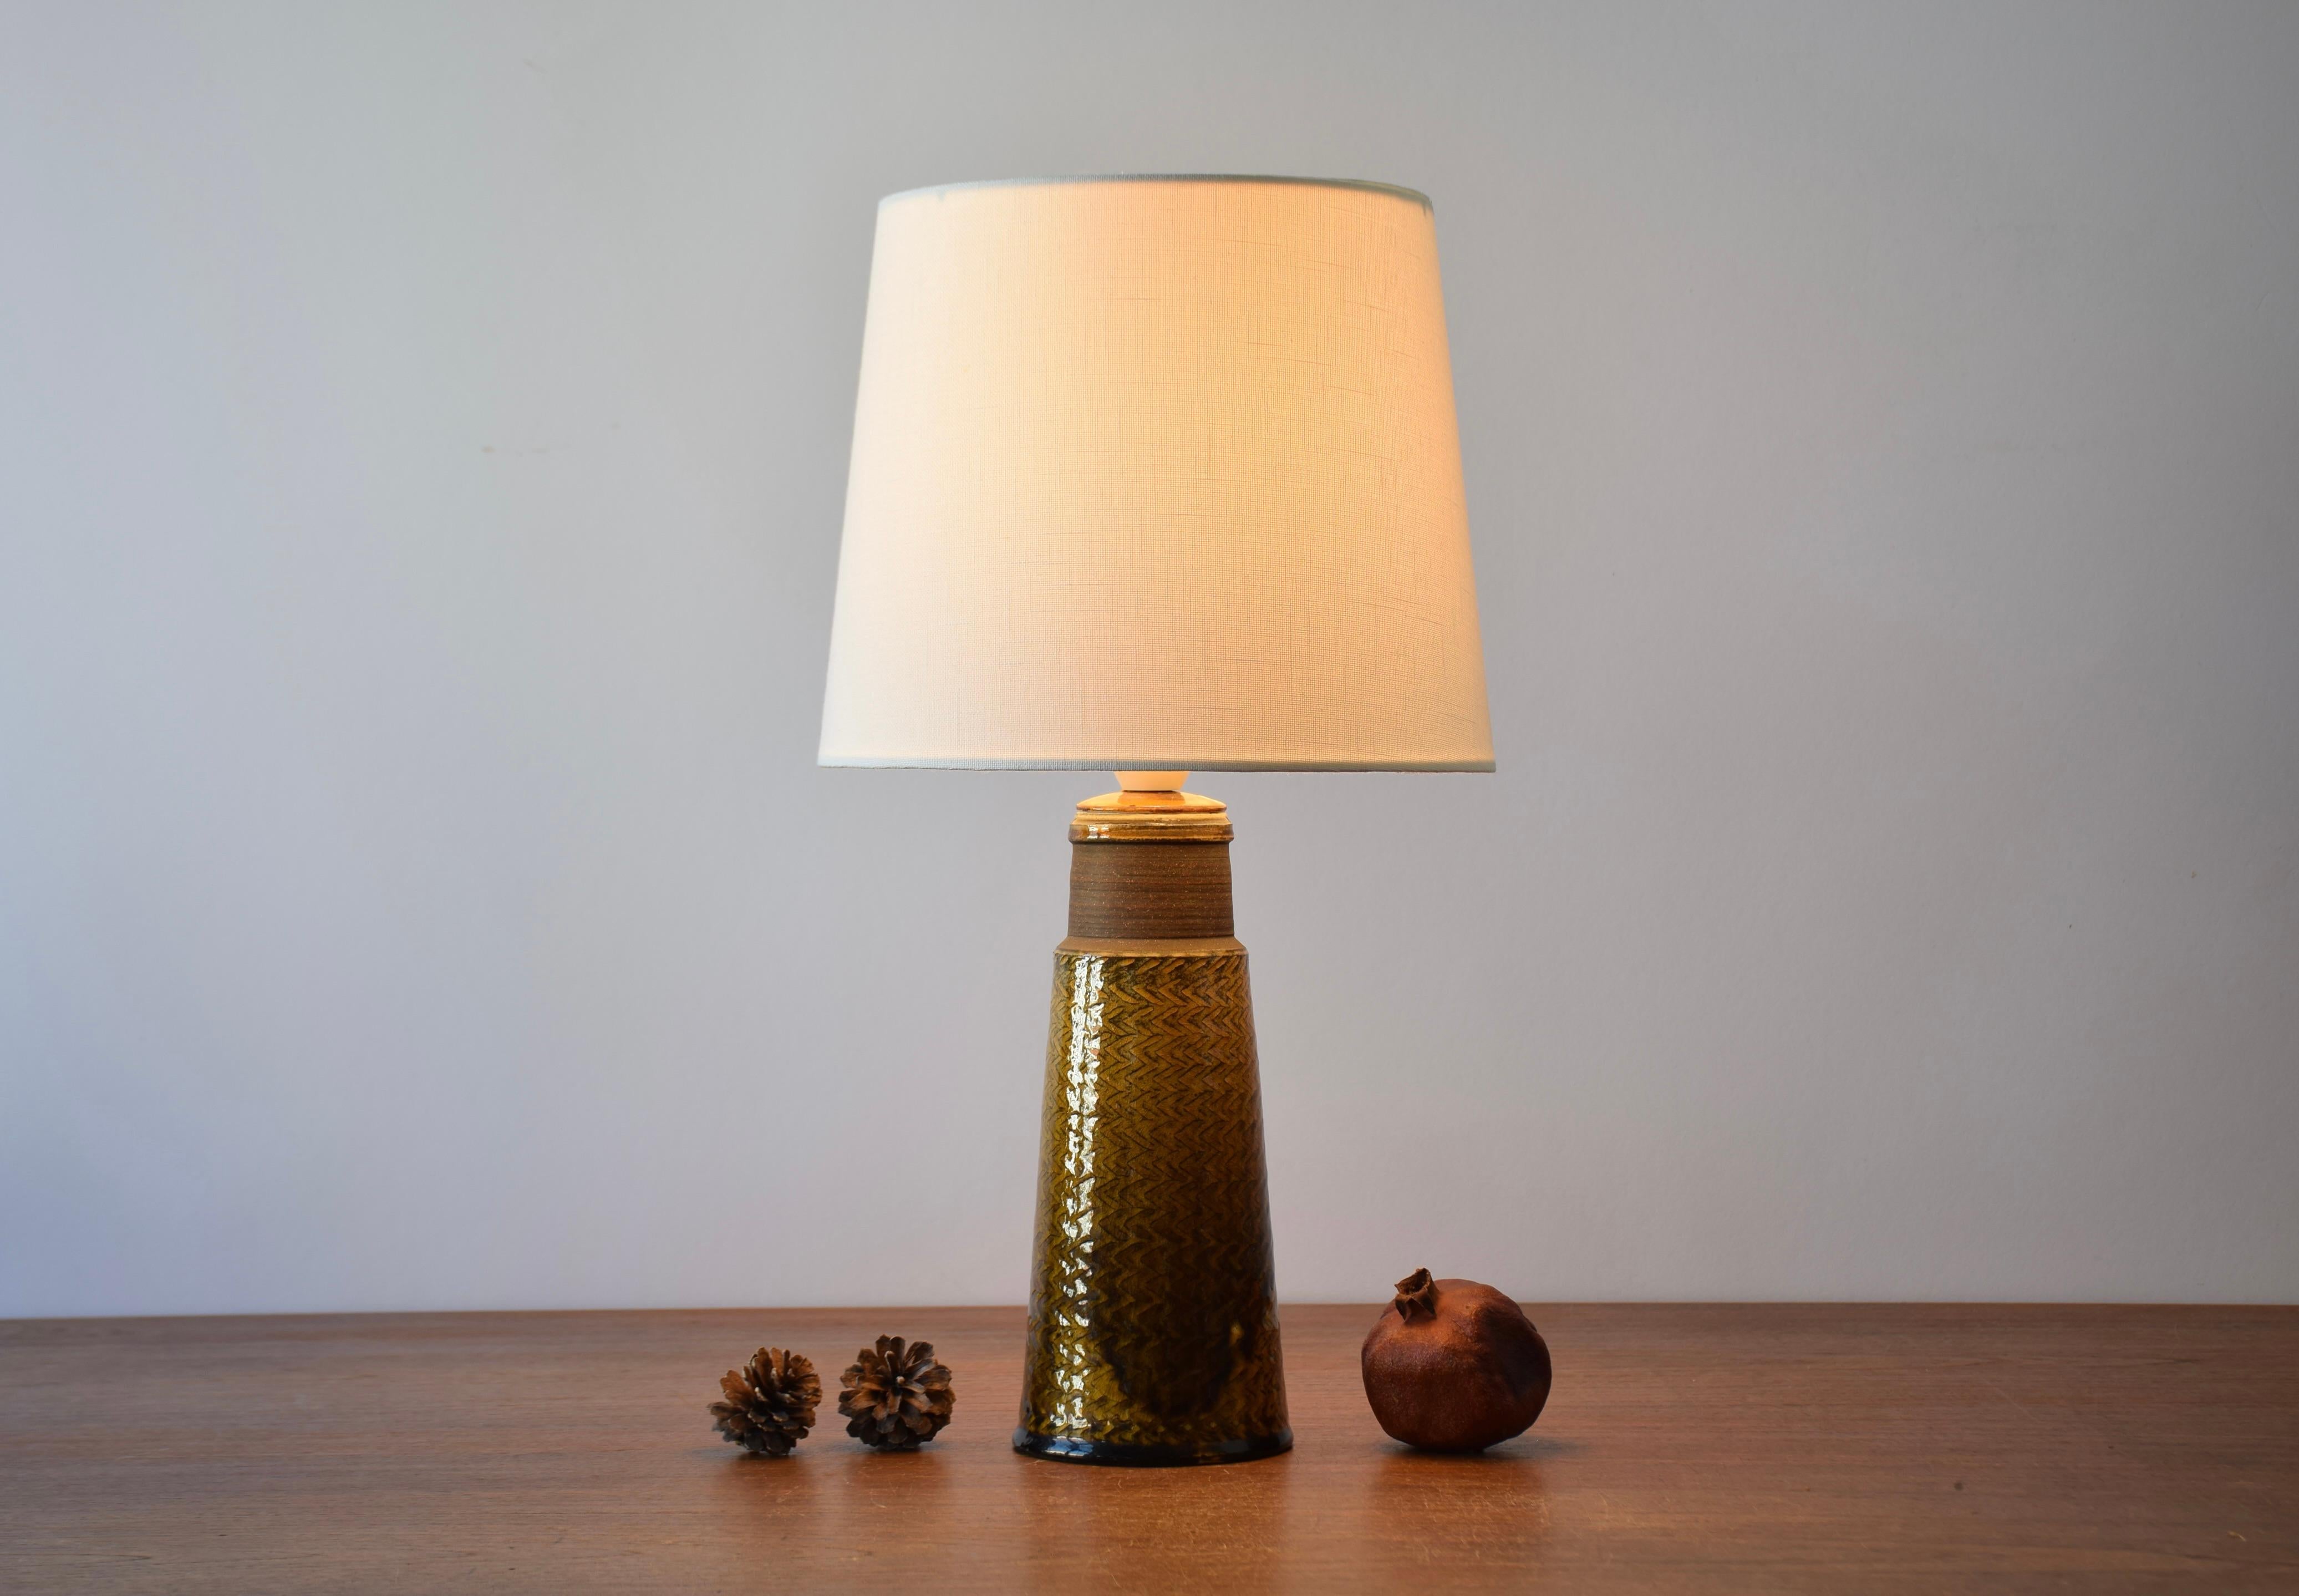 Lampe de table conçue par Nils Kähler et fabriquée par l'atelier de céramique de Herman August Kähler au Danemark dans les années 1960.

La base de la lampe présente un motif en zigzag incisé et la glaçure brillante est de couleur ambre/curry. Une